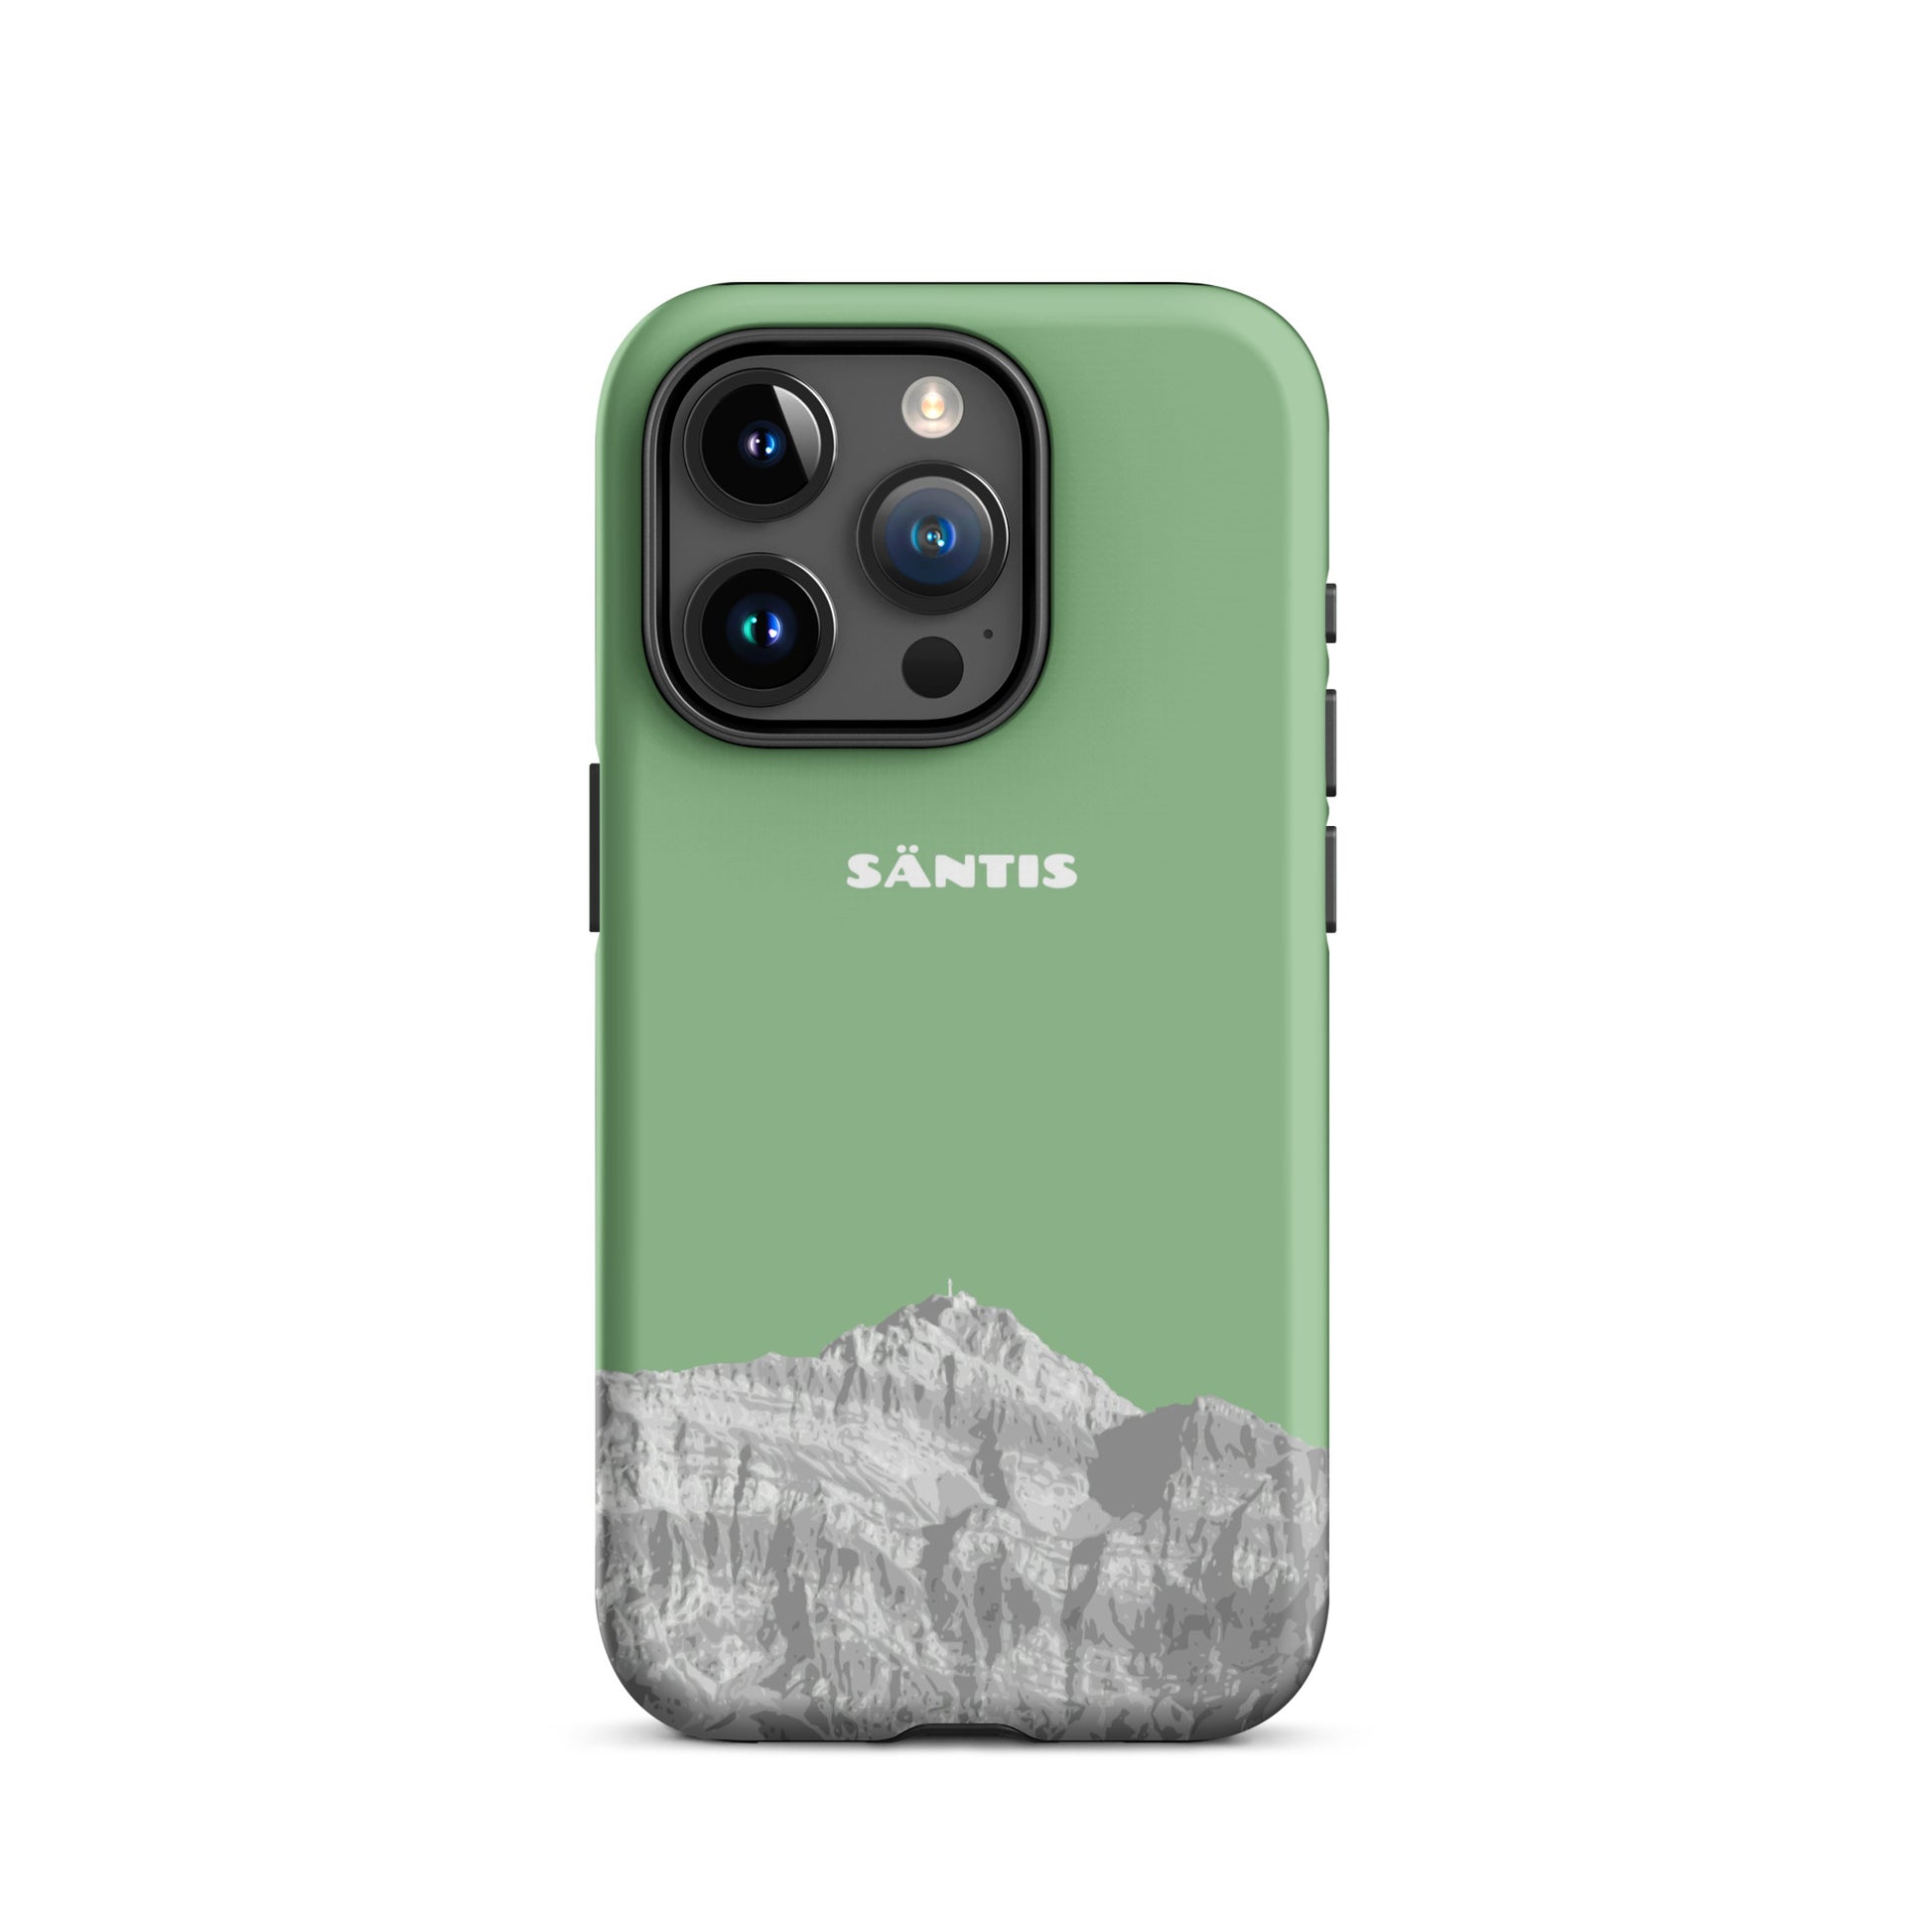 Hülle für das iPhone 15 Pro von Apple in der Farbe Hellgrün, dass den Säntis im Alpstein zeigt.